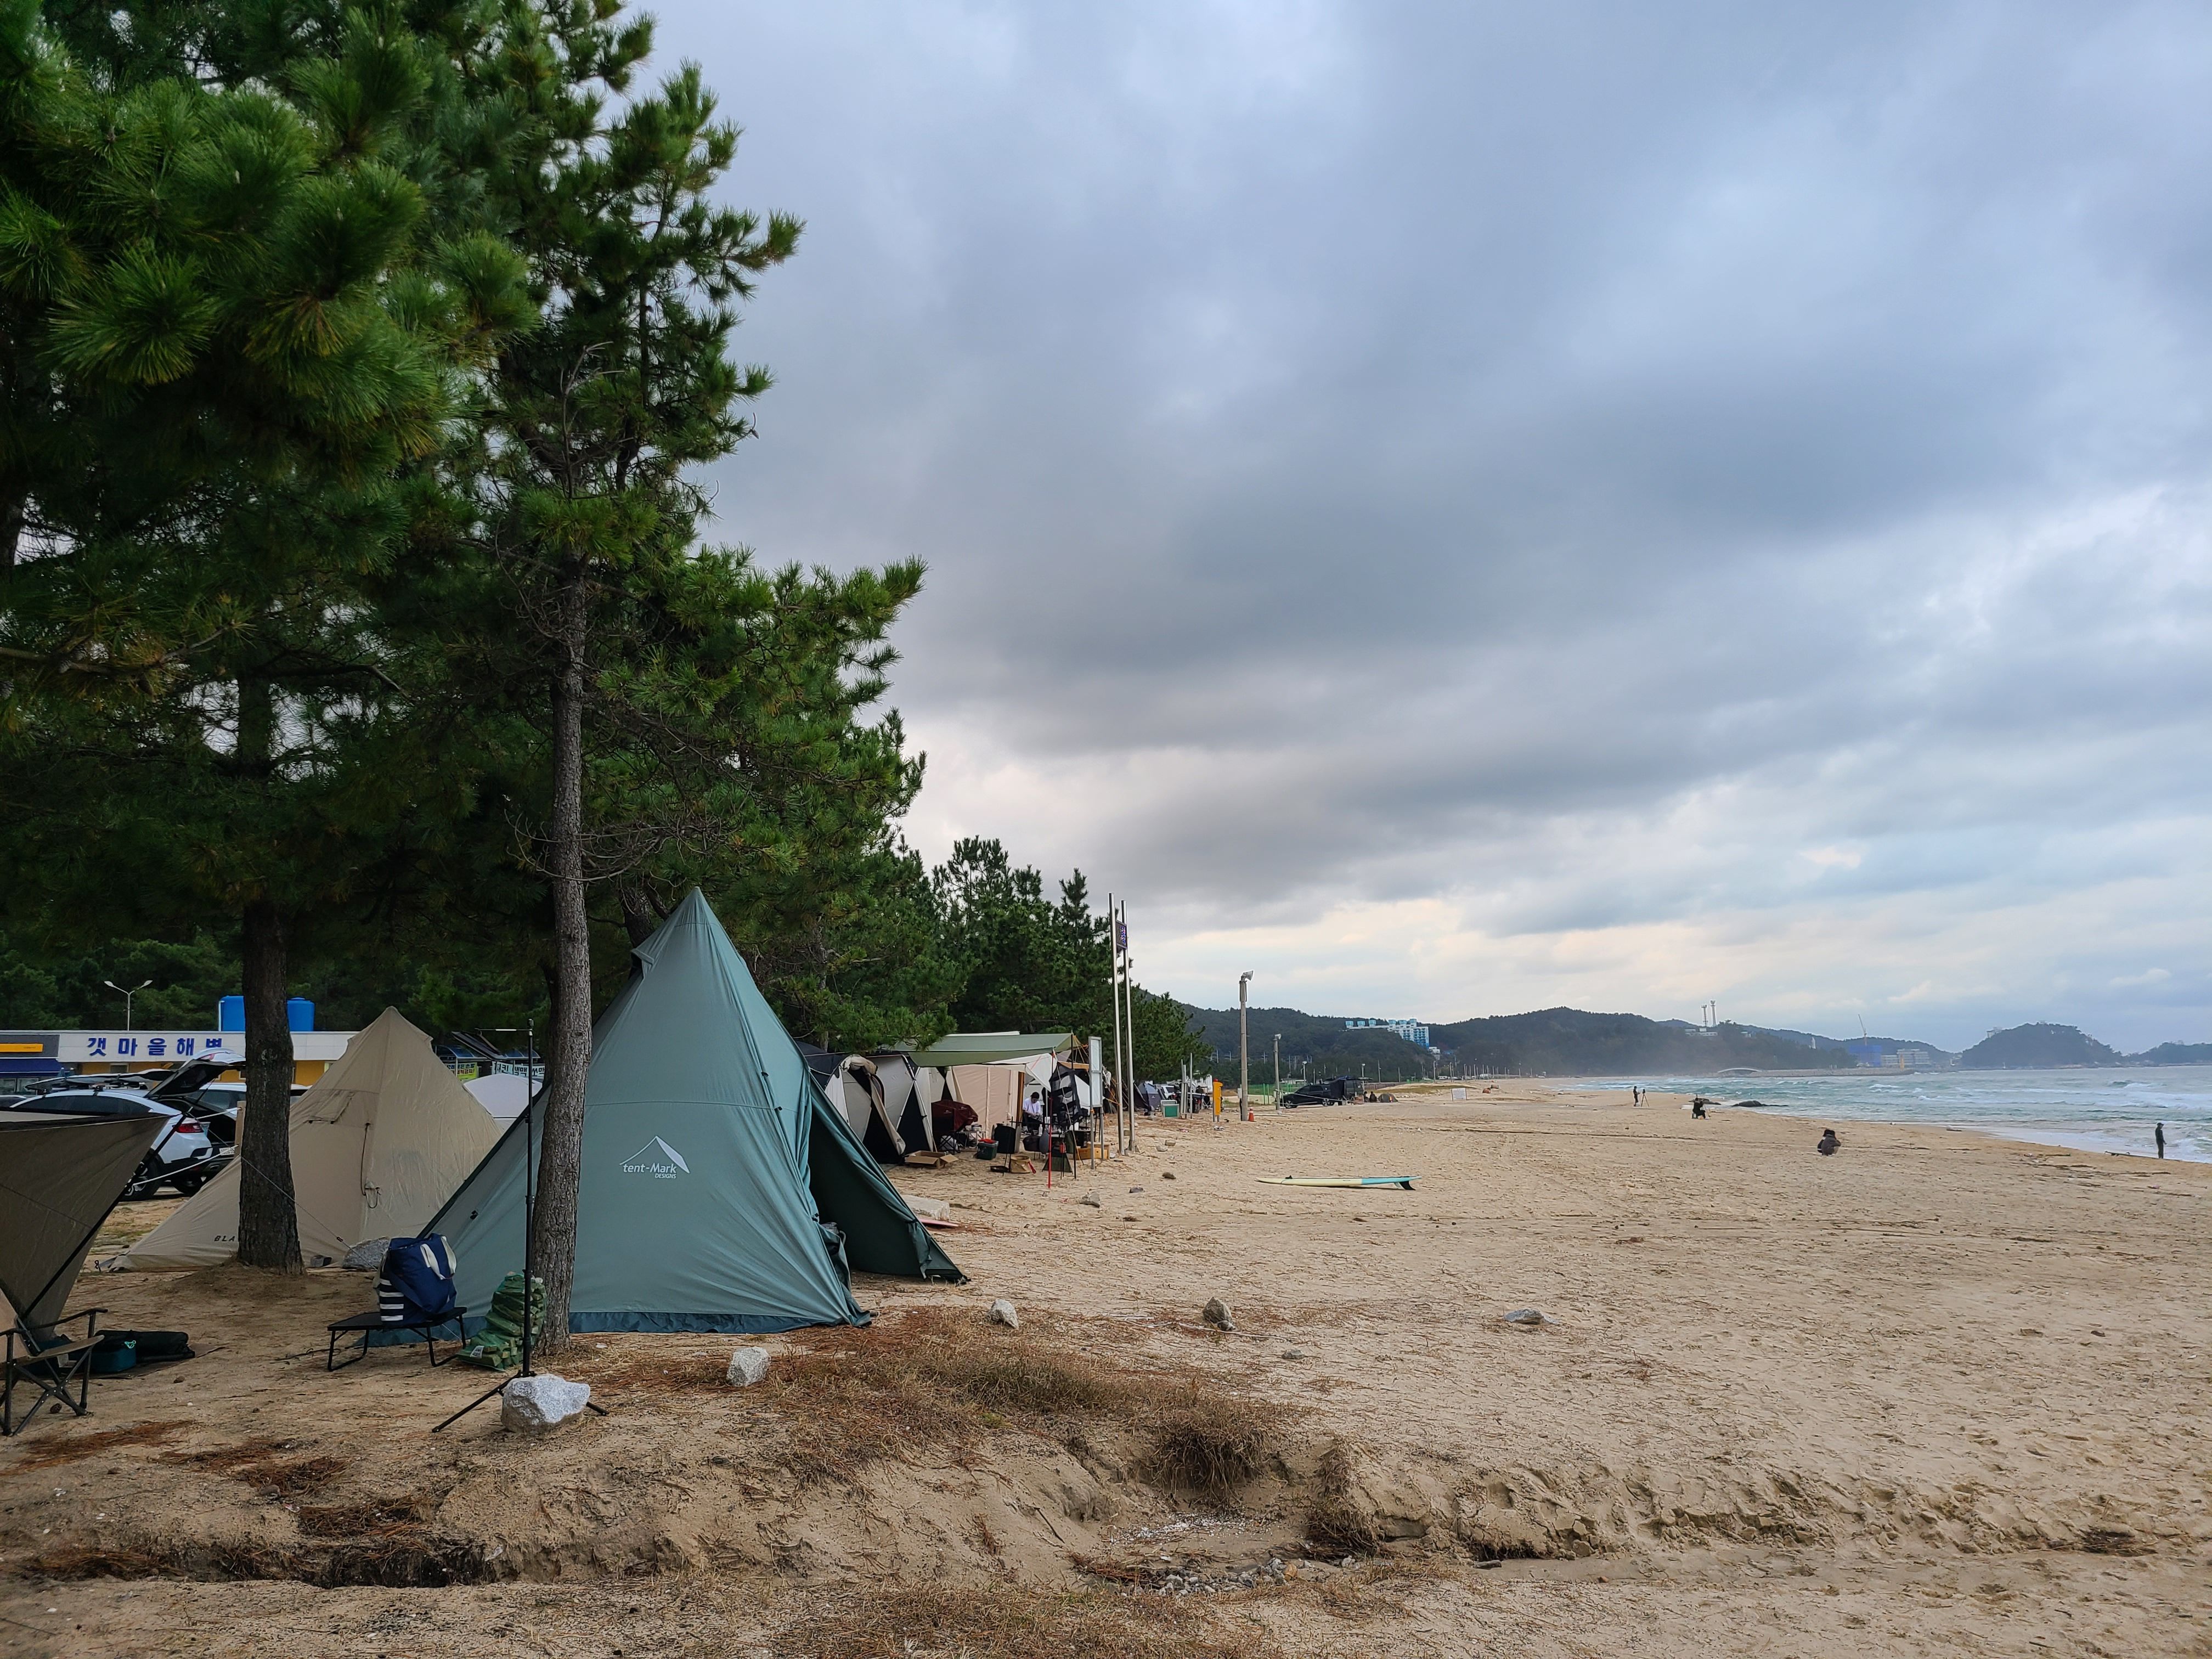 갯마을 해변에 설치 되어 있는 텐트들 모습